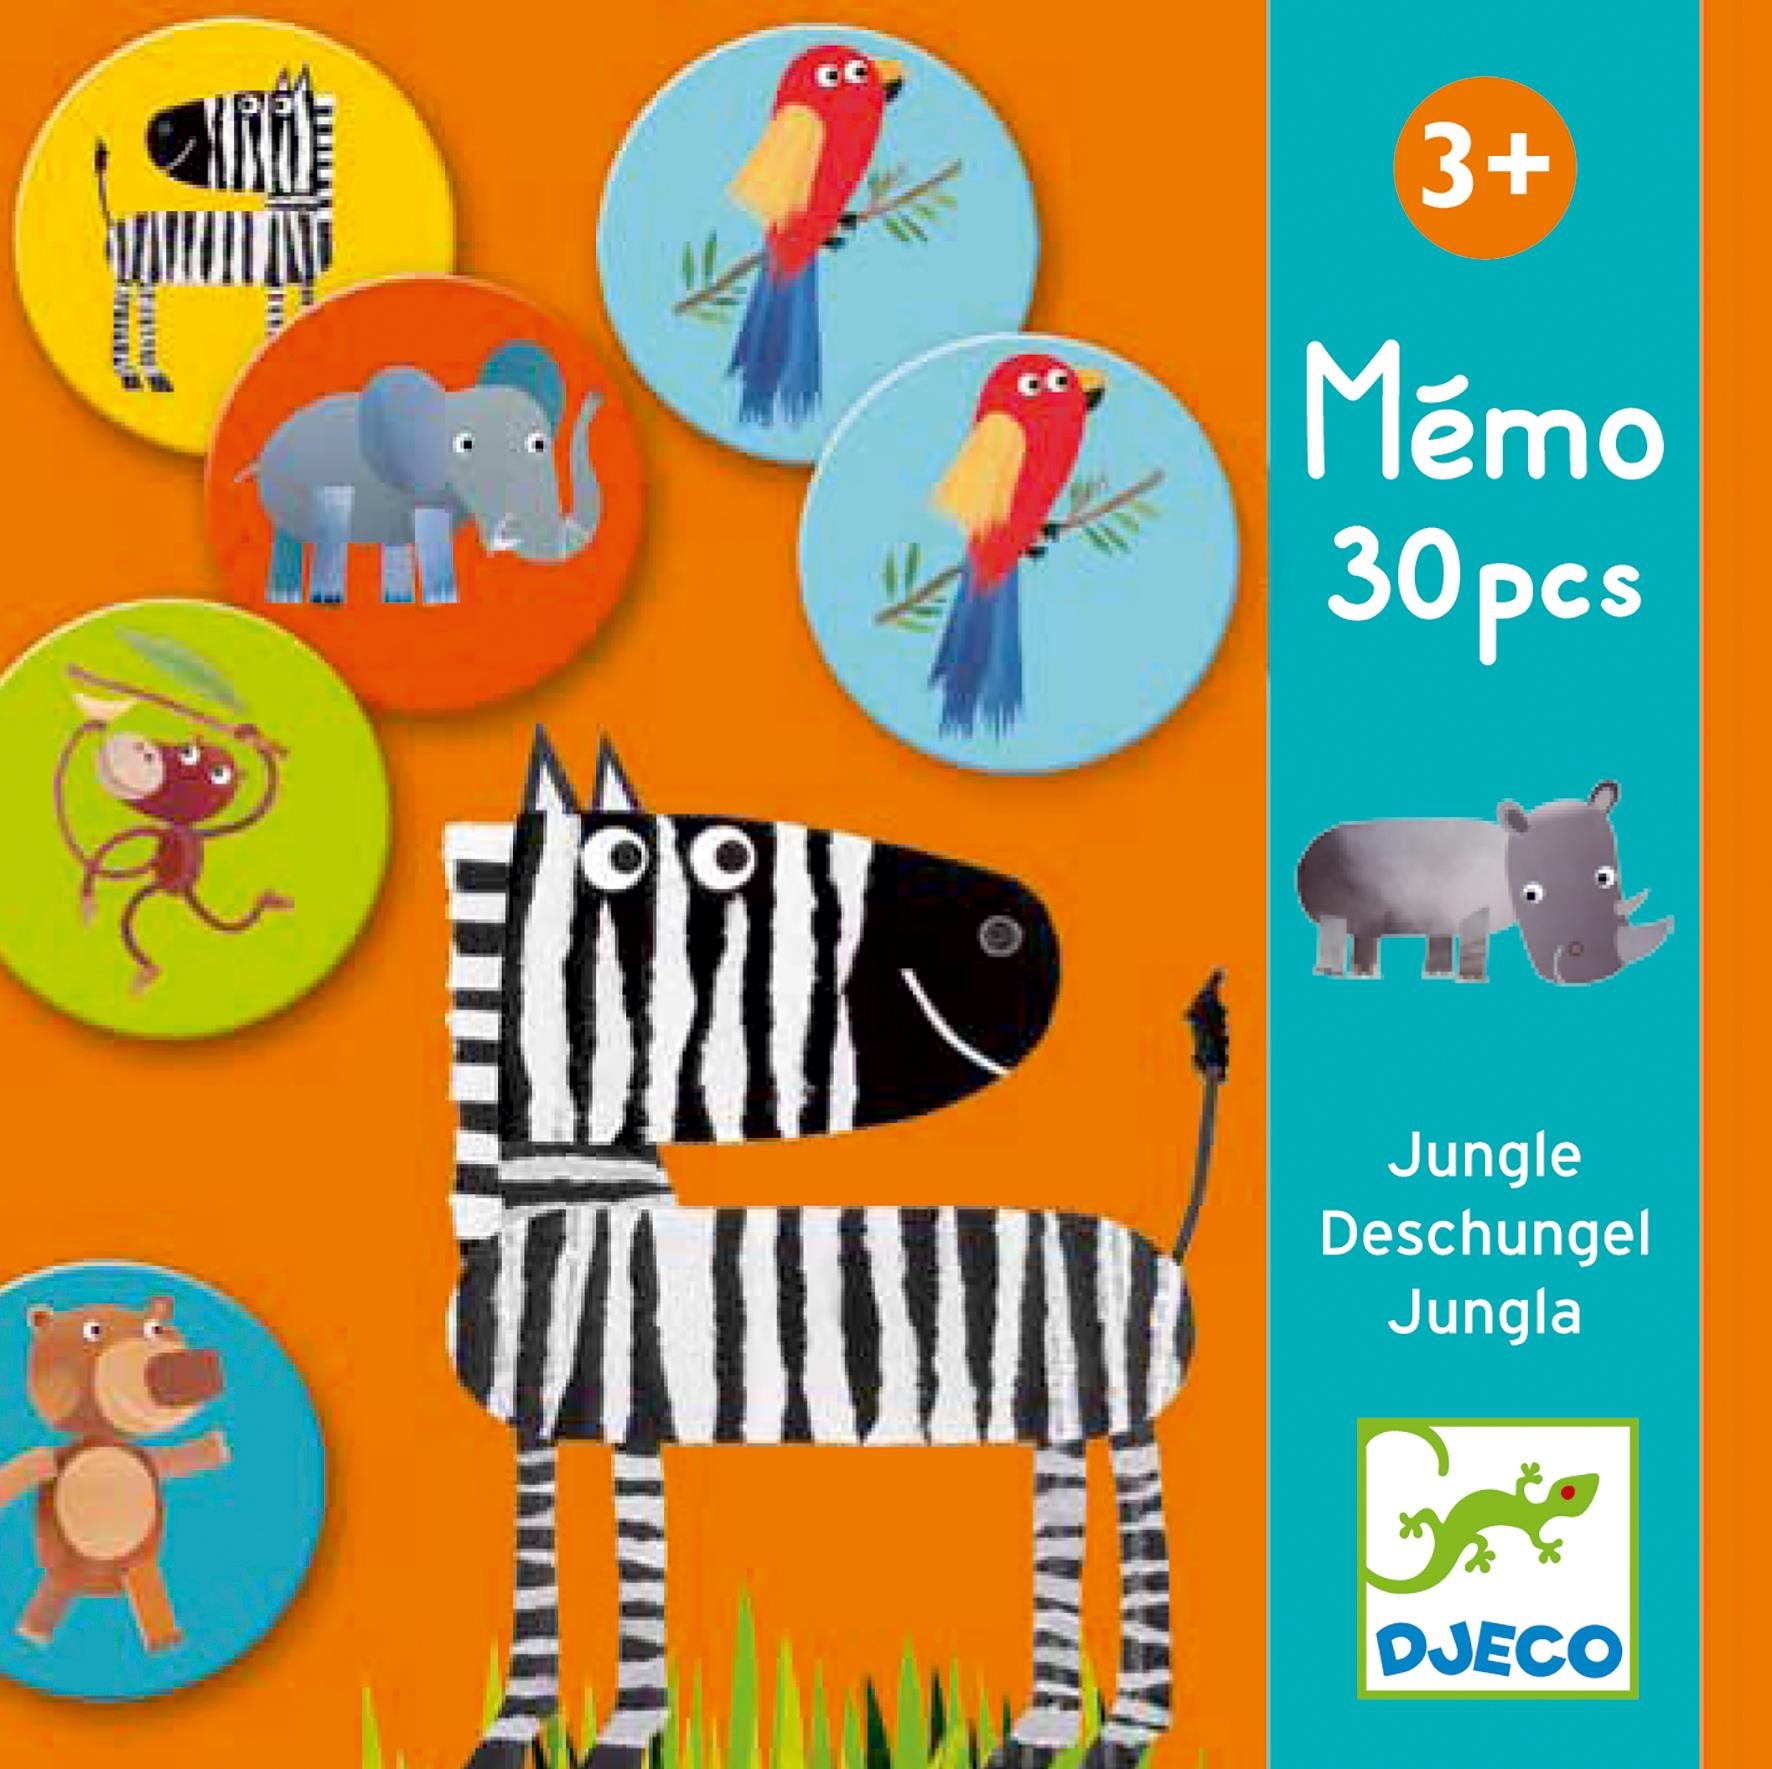 Memo Jungle memóriajáték gyerekeknek - Djeco